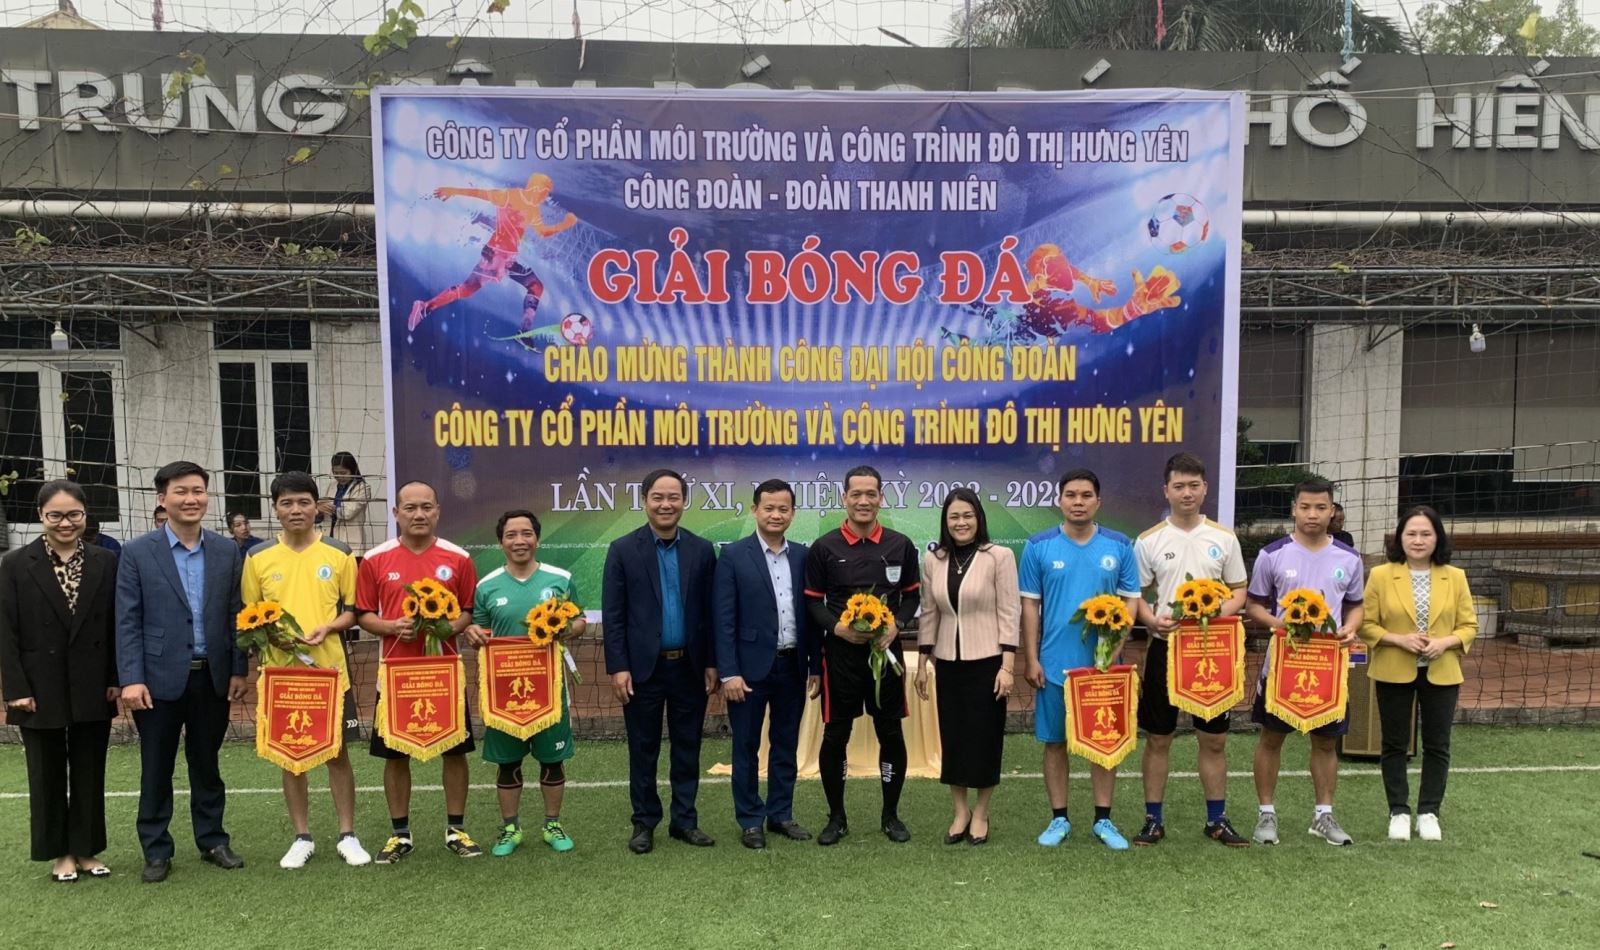 Giao lưu bóng đá chào mừng thành công Đại hội Công đoàn  Công ty Cổ phần Môi trường và công trình đô thị Hưng Yên